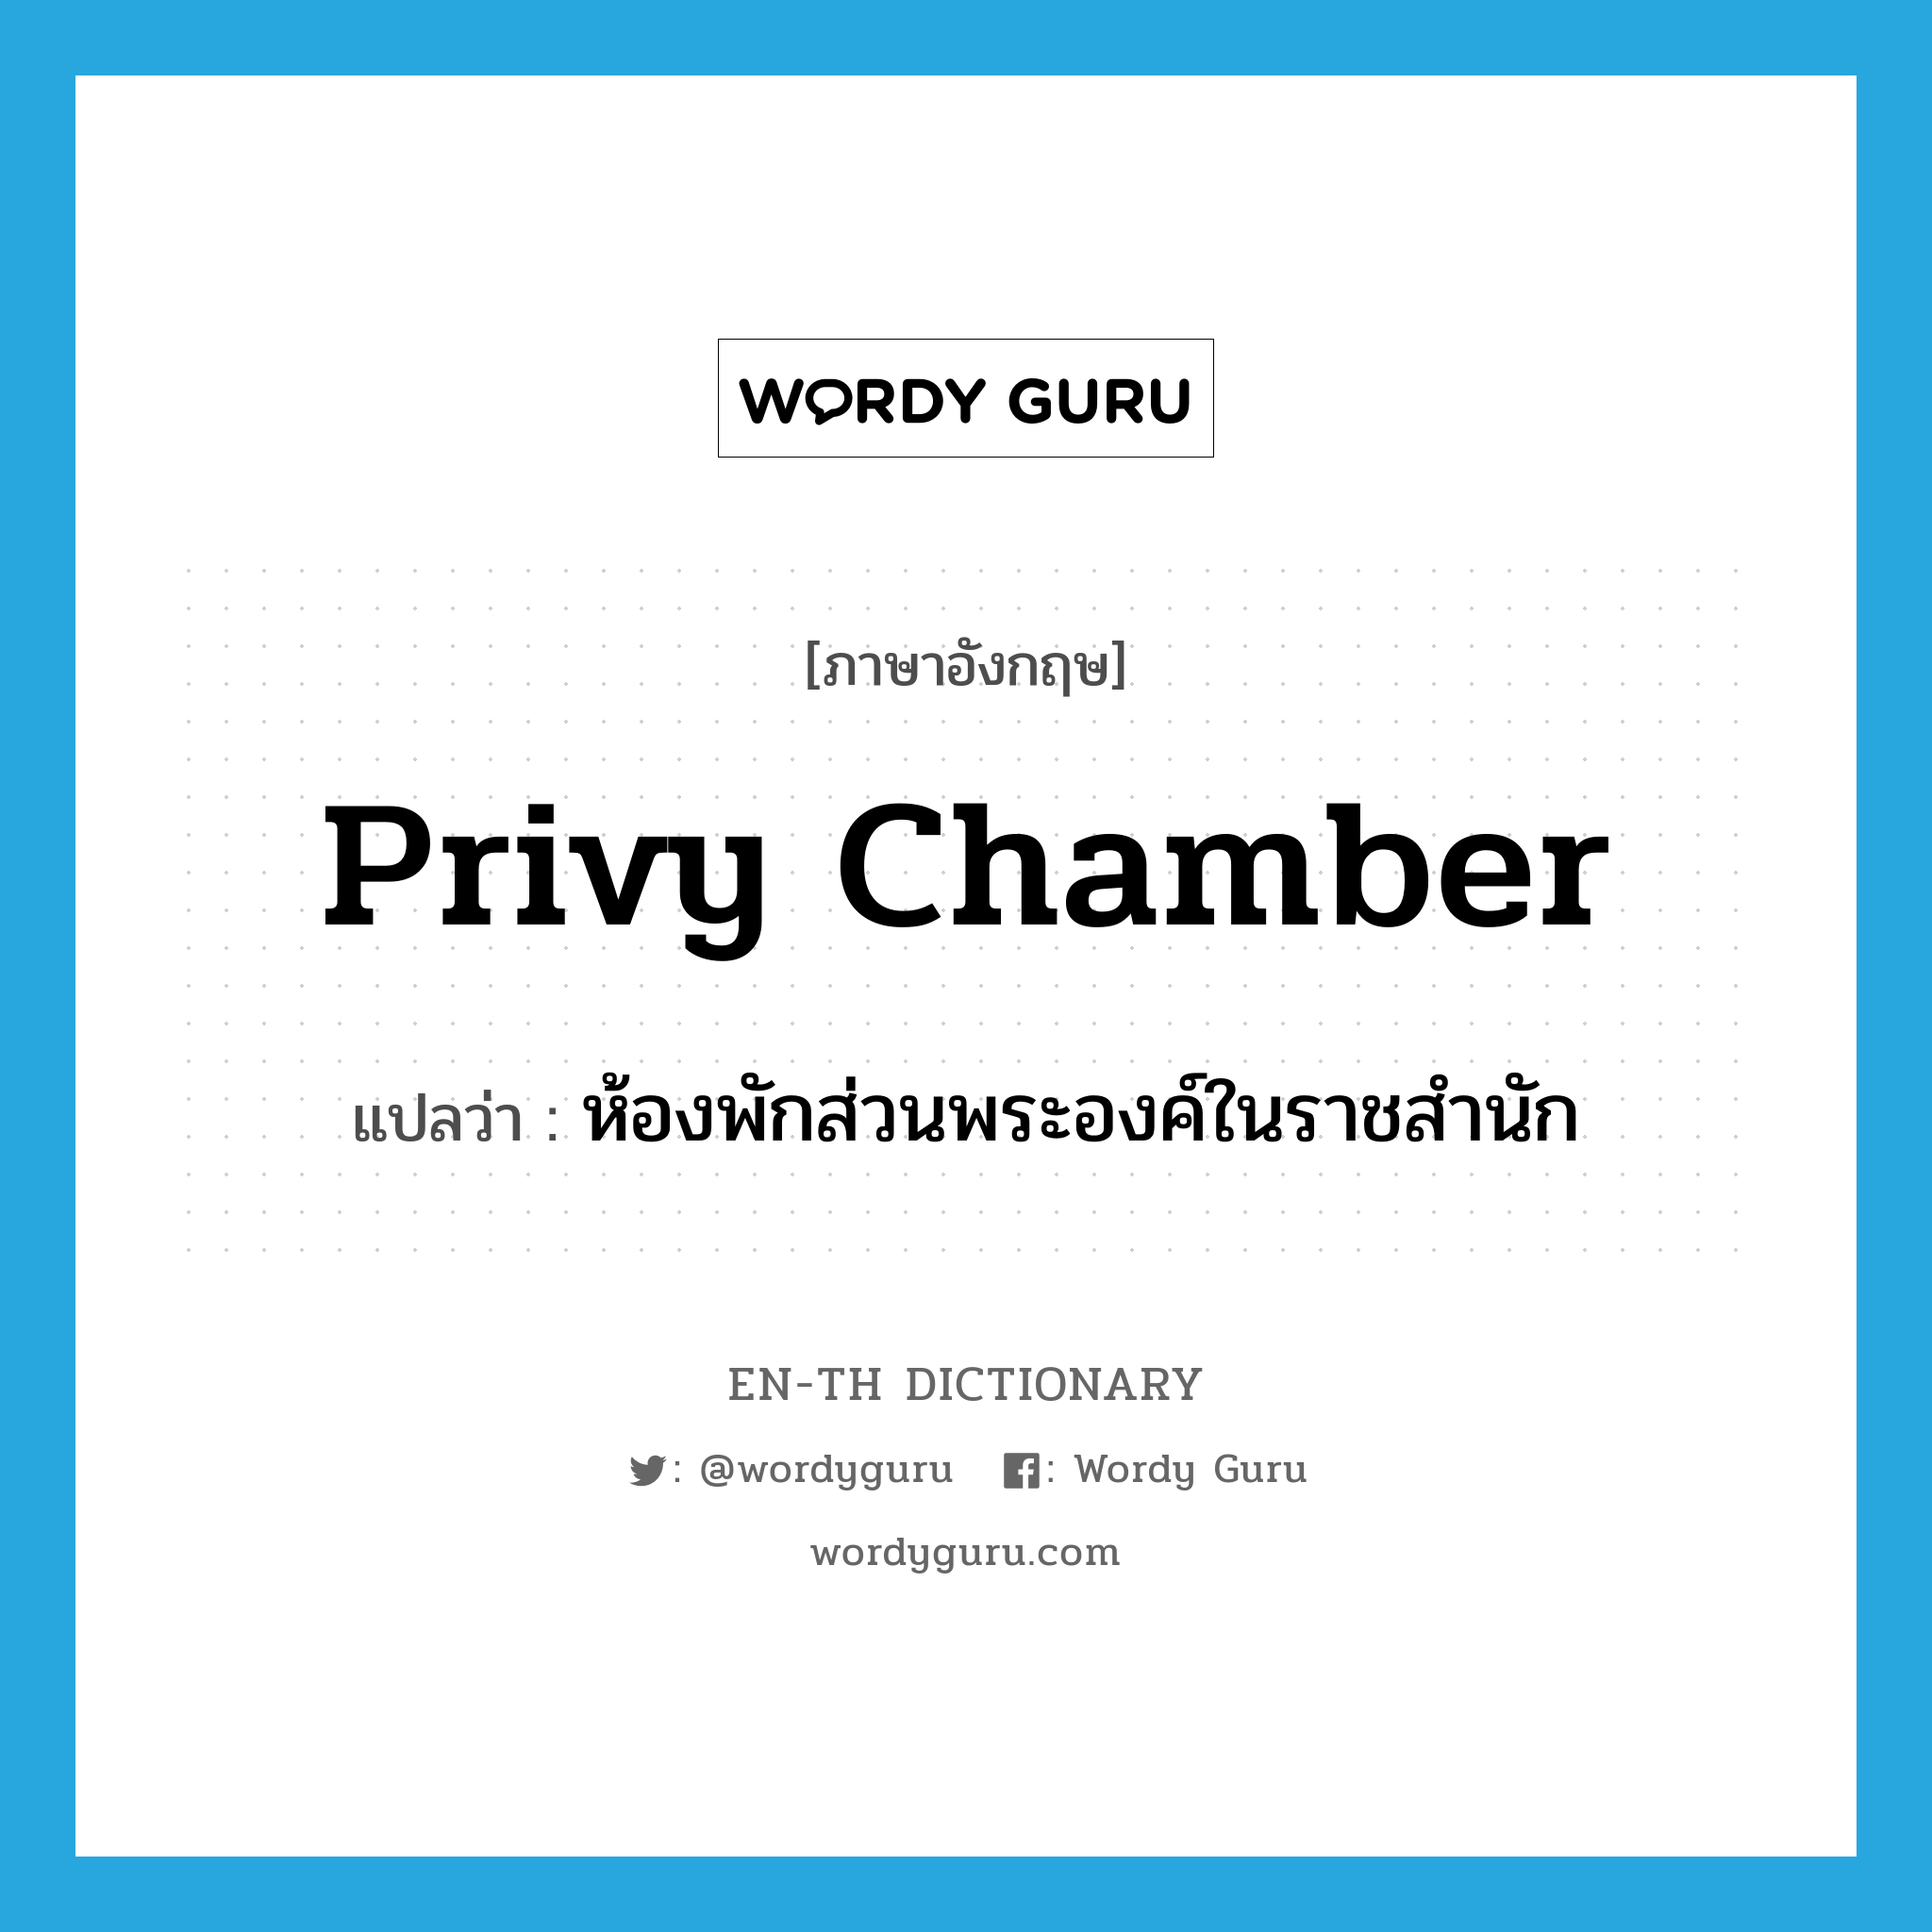 privy chamber แปลว่า?, คำศัพท์ภาษาอังกฤษ privy chamber แปลว่า ห้องพักส่วนพระองค์ในราชสำนัก ประเภท N หมวด N